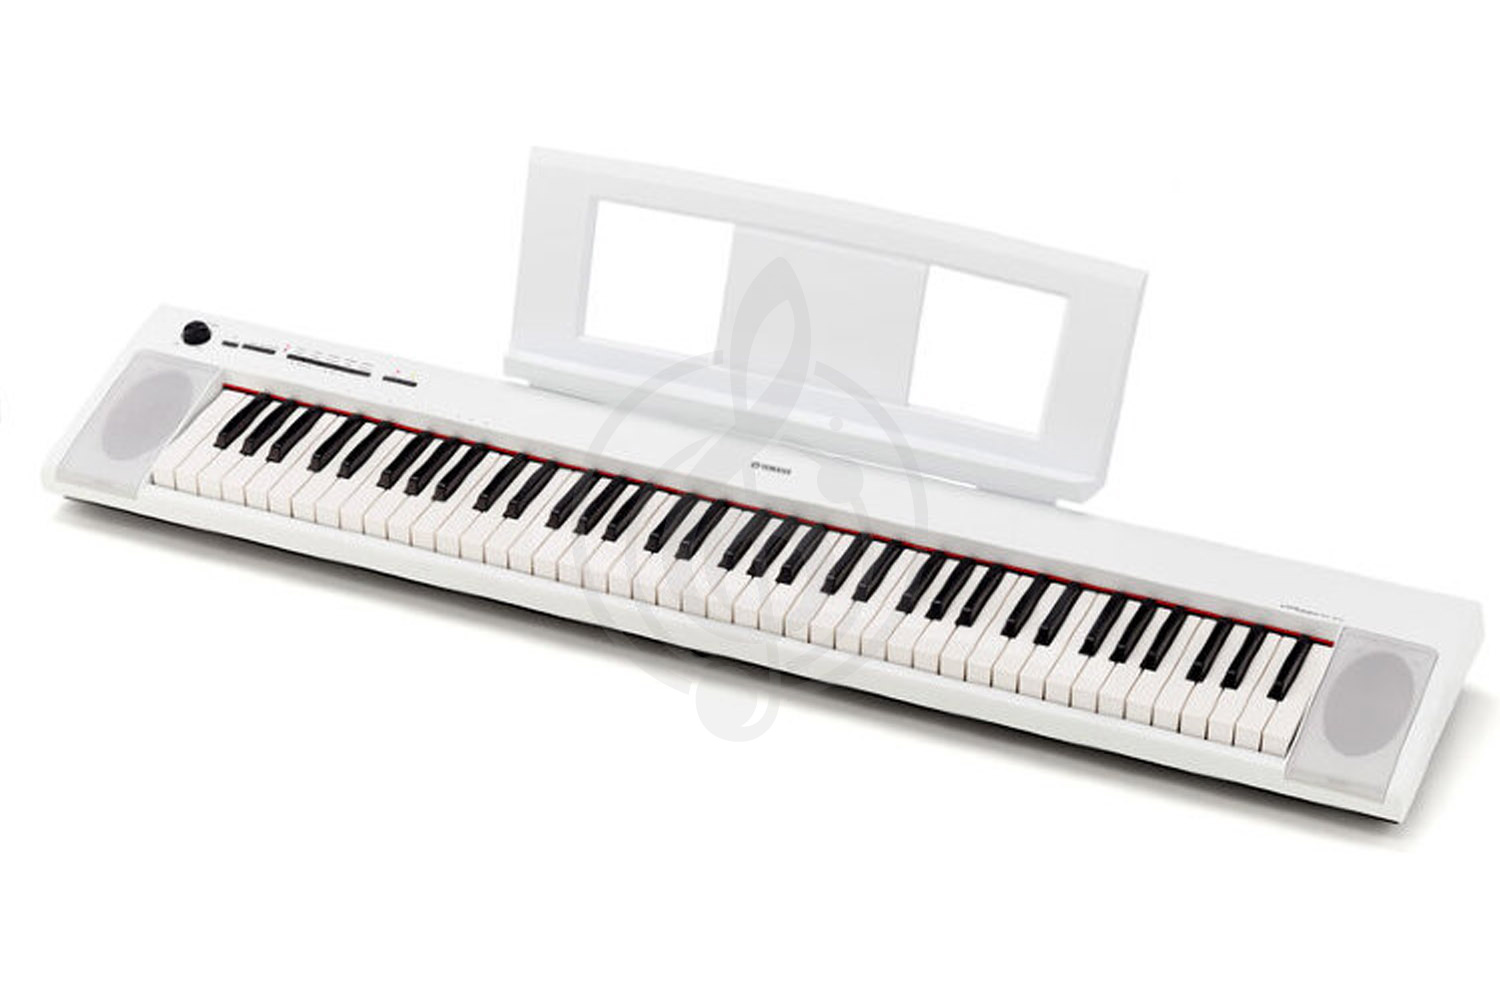 Цифровое пианино Цифровые пианино Yamaha Yamaha NP-32WH Piaggero - электропиано NP-32WH - фото 1